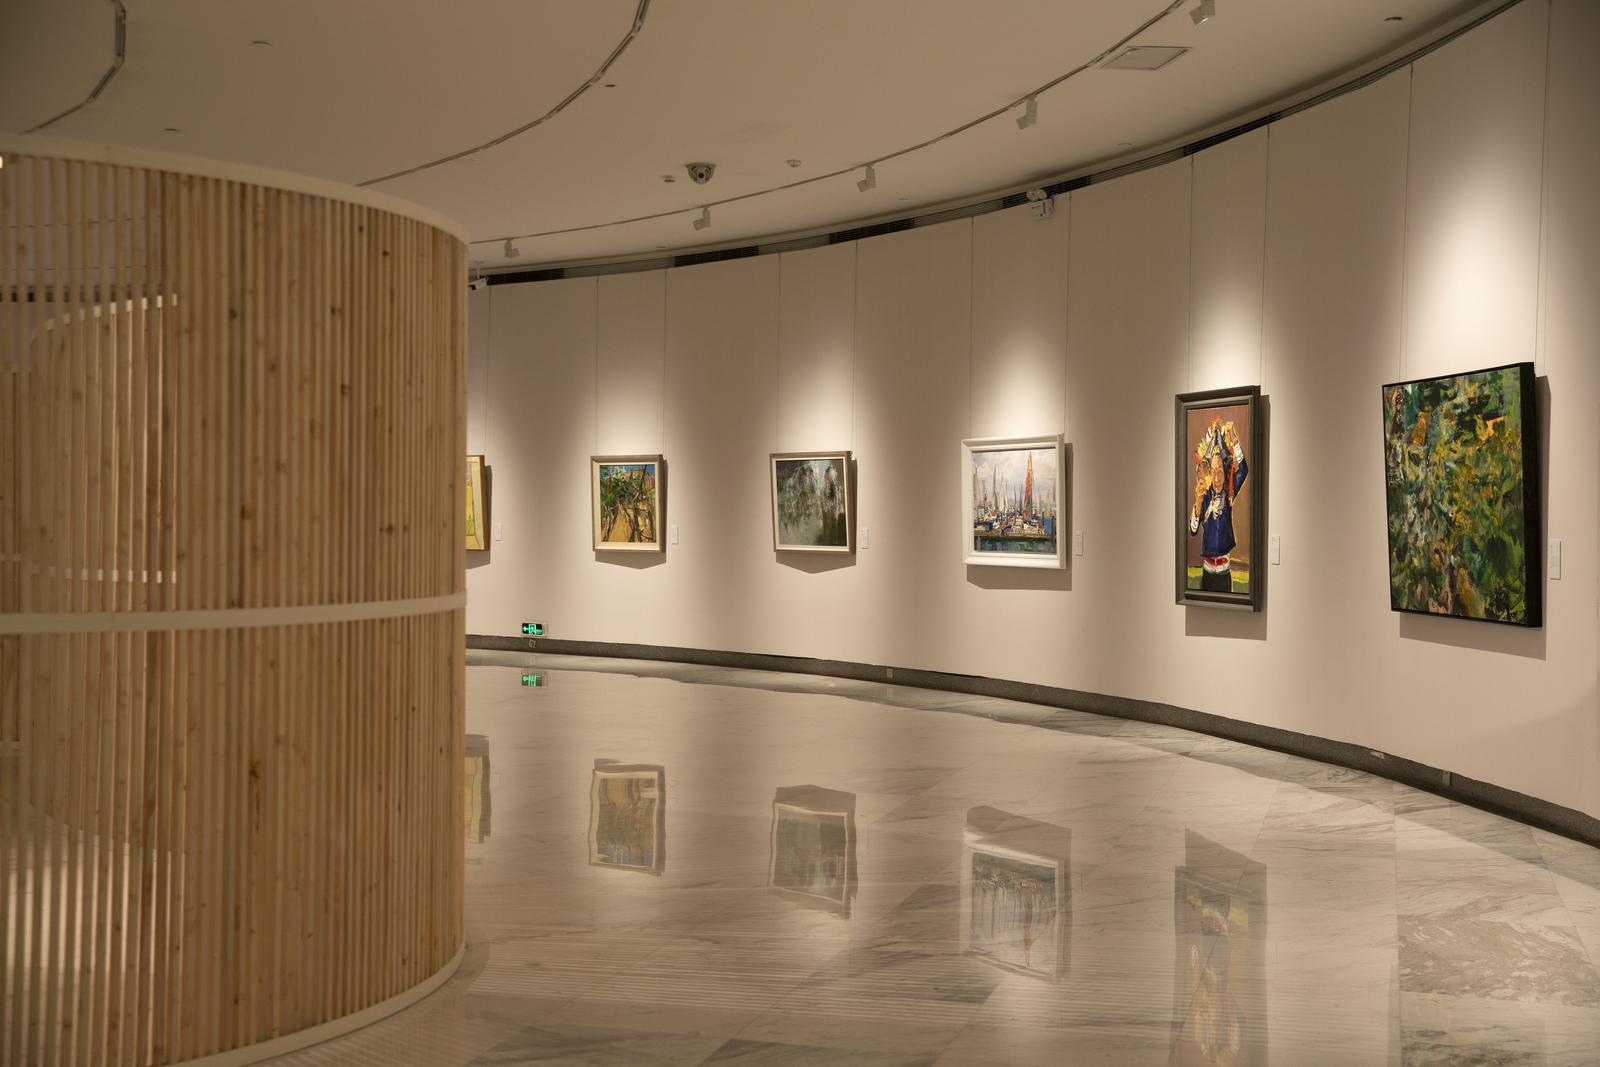 图片展示了一个画廊内部，墙上挂着多幅画作，画廊地面反射着灯光，空间宽敞，有一面弯曲的木质隔断。